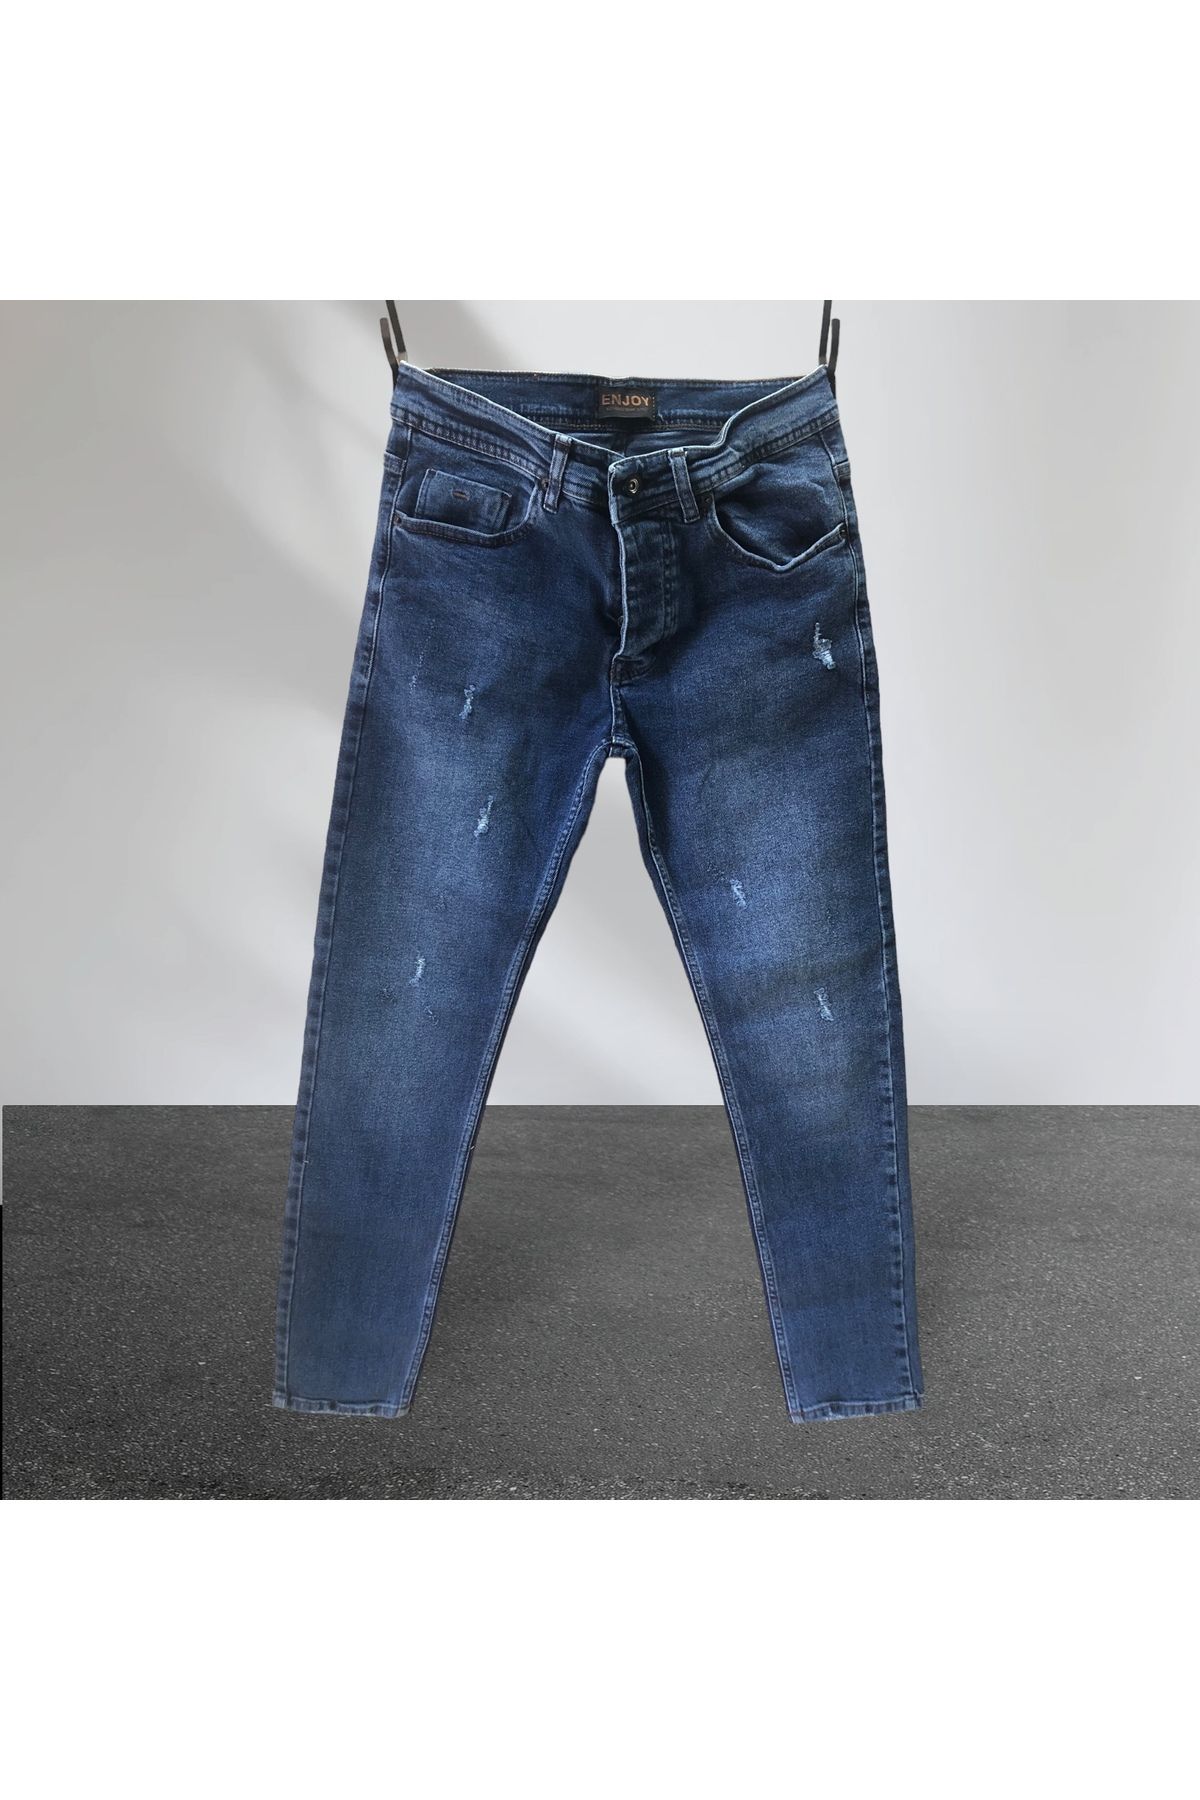 Enjoy Kot-Jeans-Tırnaklı yıpratmalı-Slim Fit-Ligralı